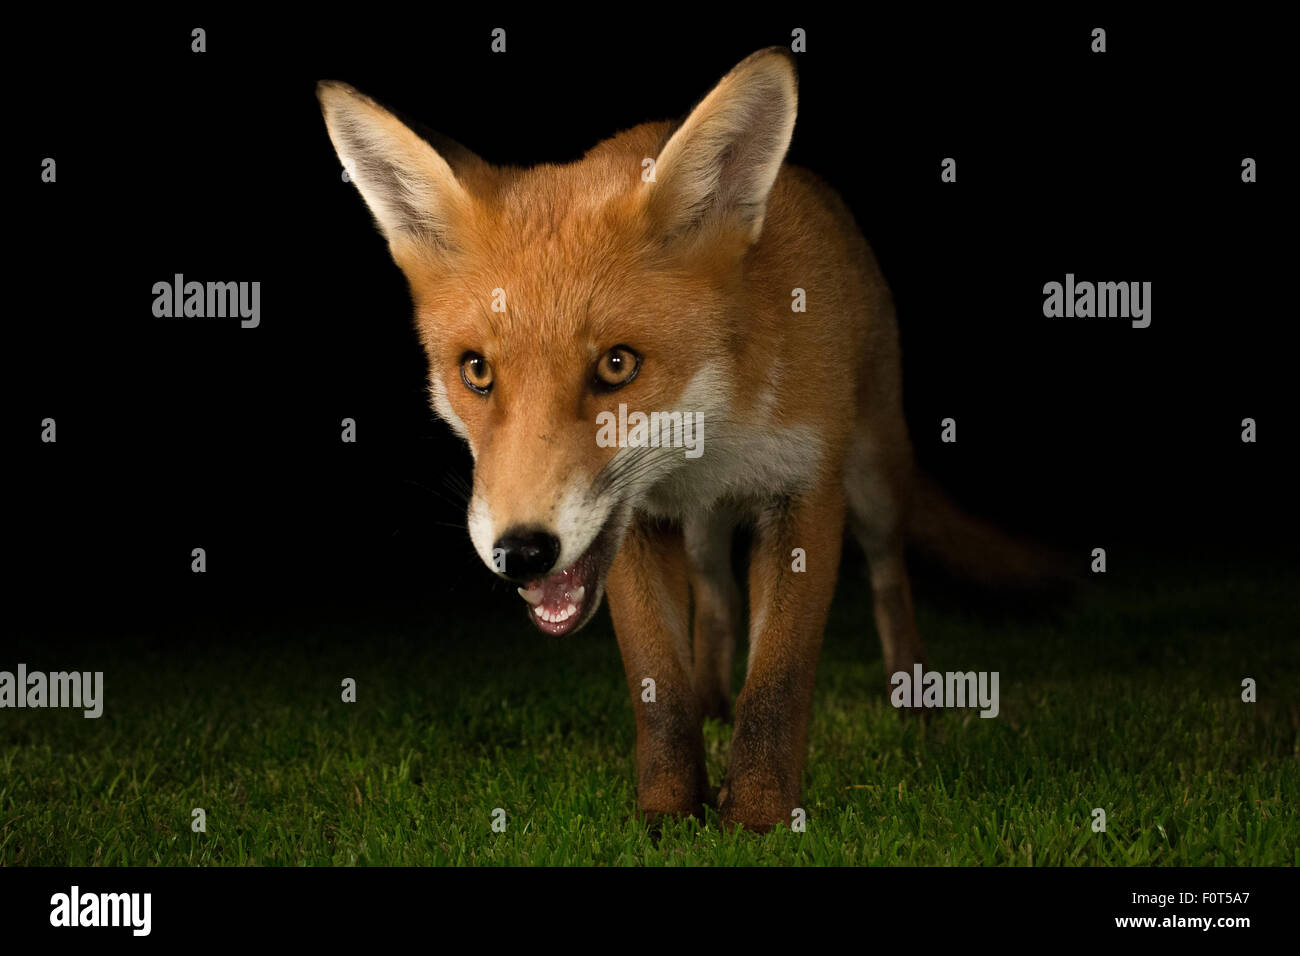 Red fox night shot Stock Photo